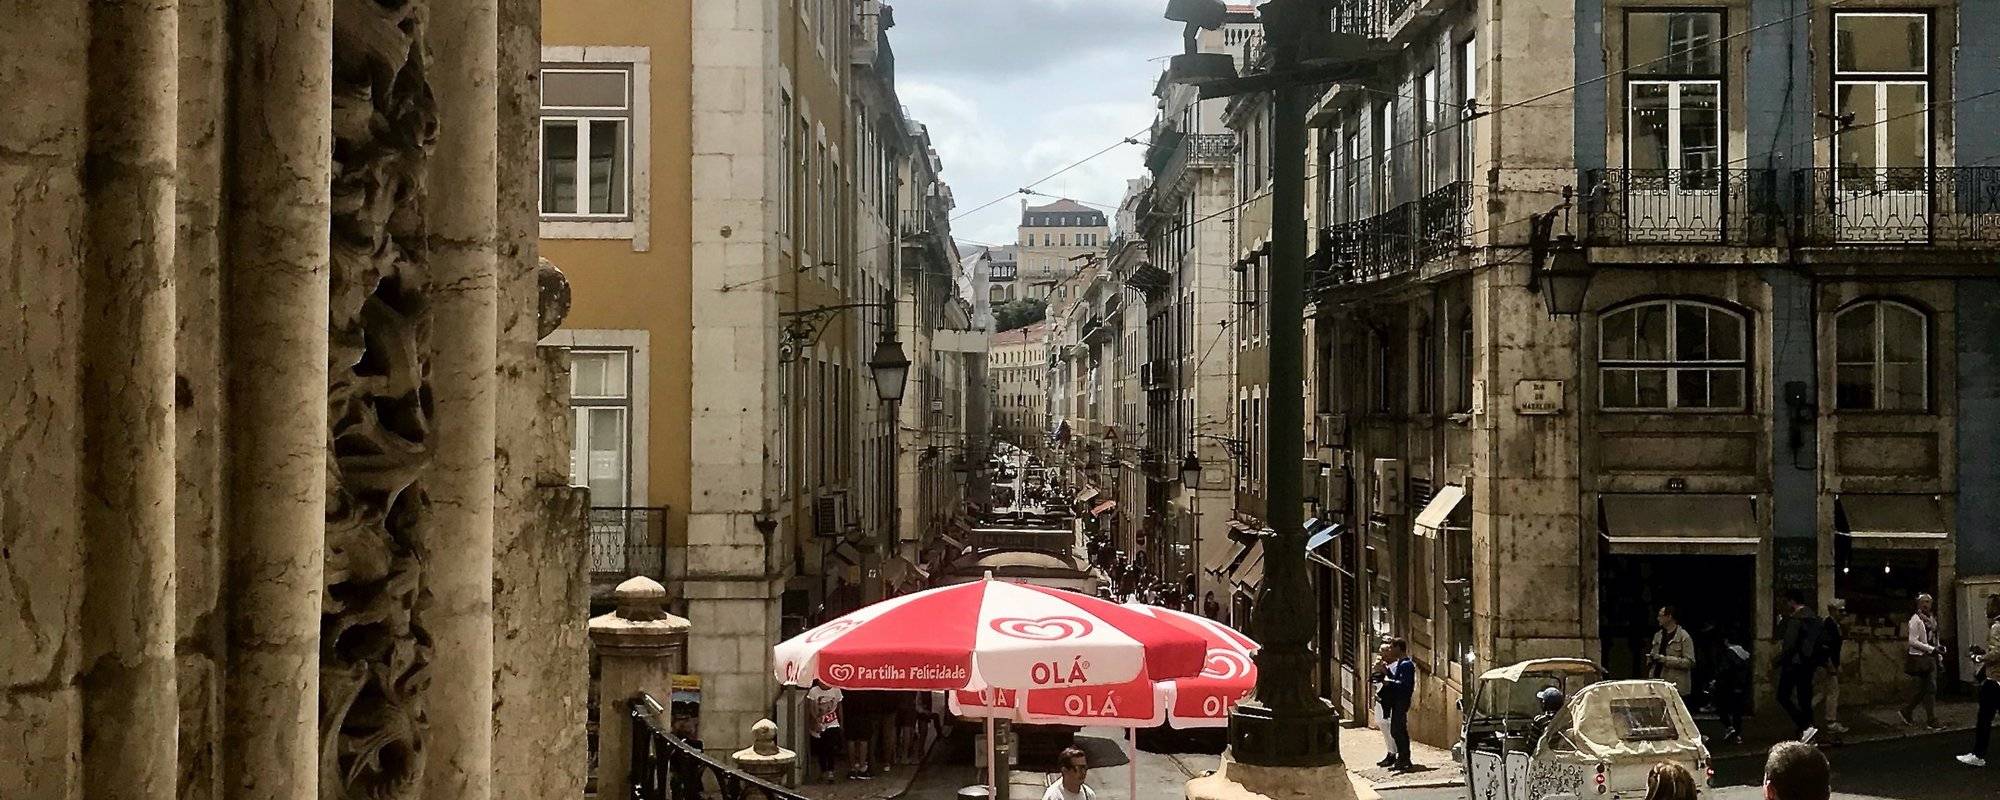 Travels in Portugal: Calcada Portuguesa (Portuguese Pavement) - Lisbon, Portugal 